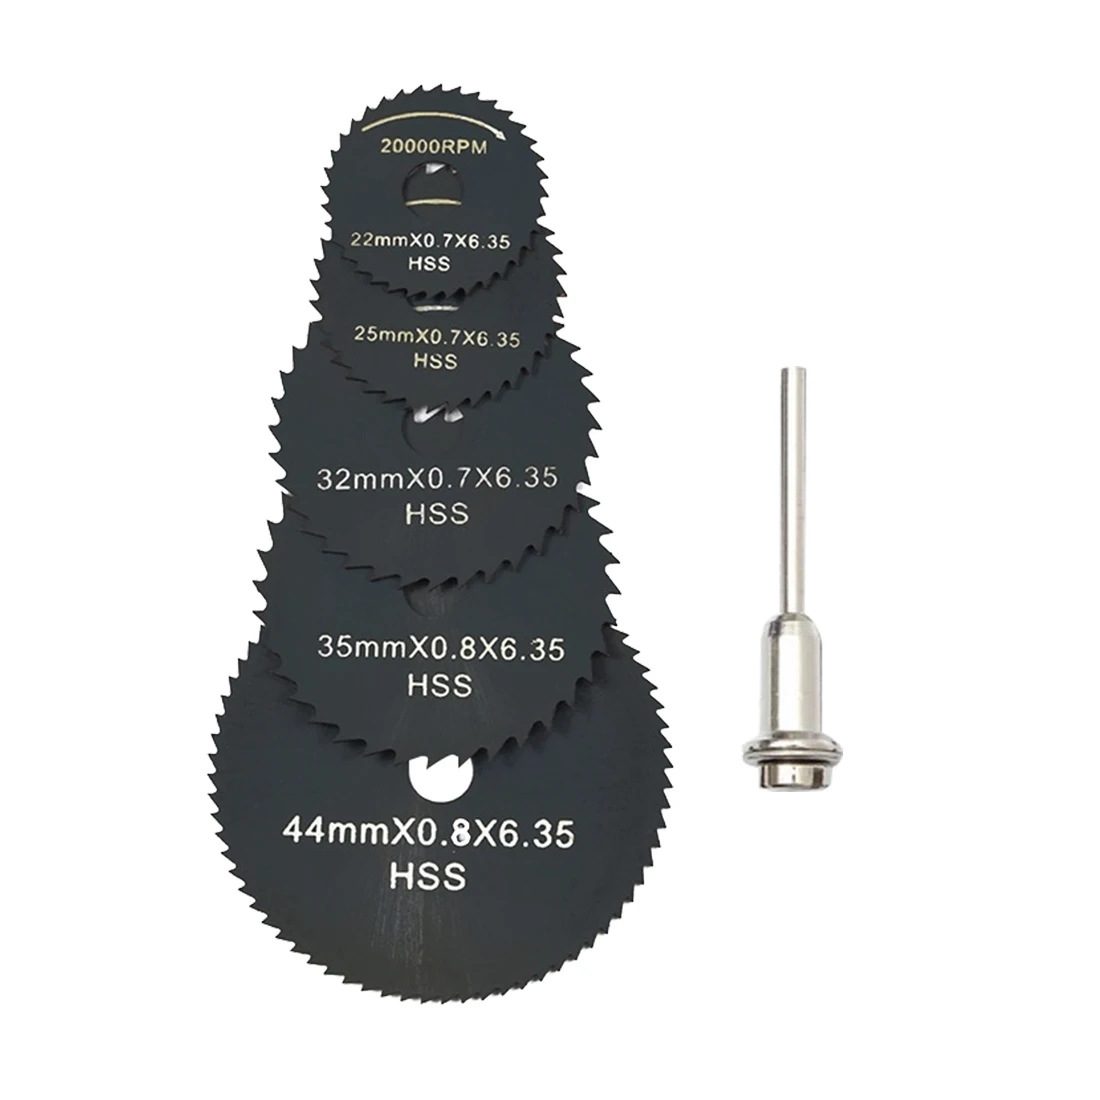  New 6Pcs Drill Dremel Accessories HSS Mini Circular Saw Blades Power Tools Wood Cutting Disc Grindi